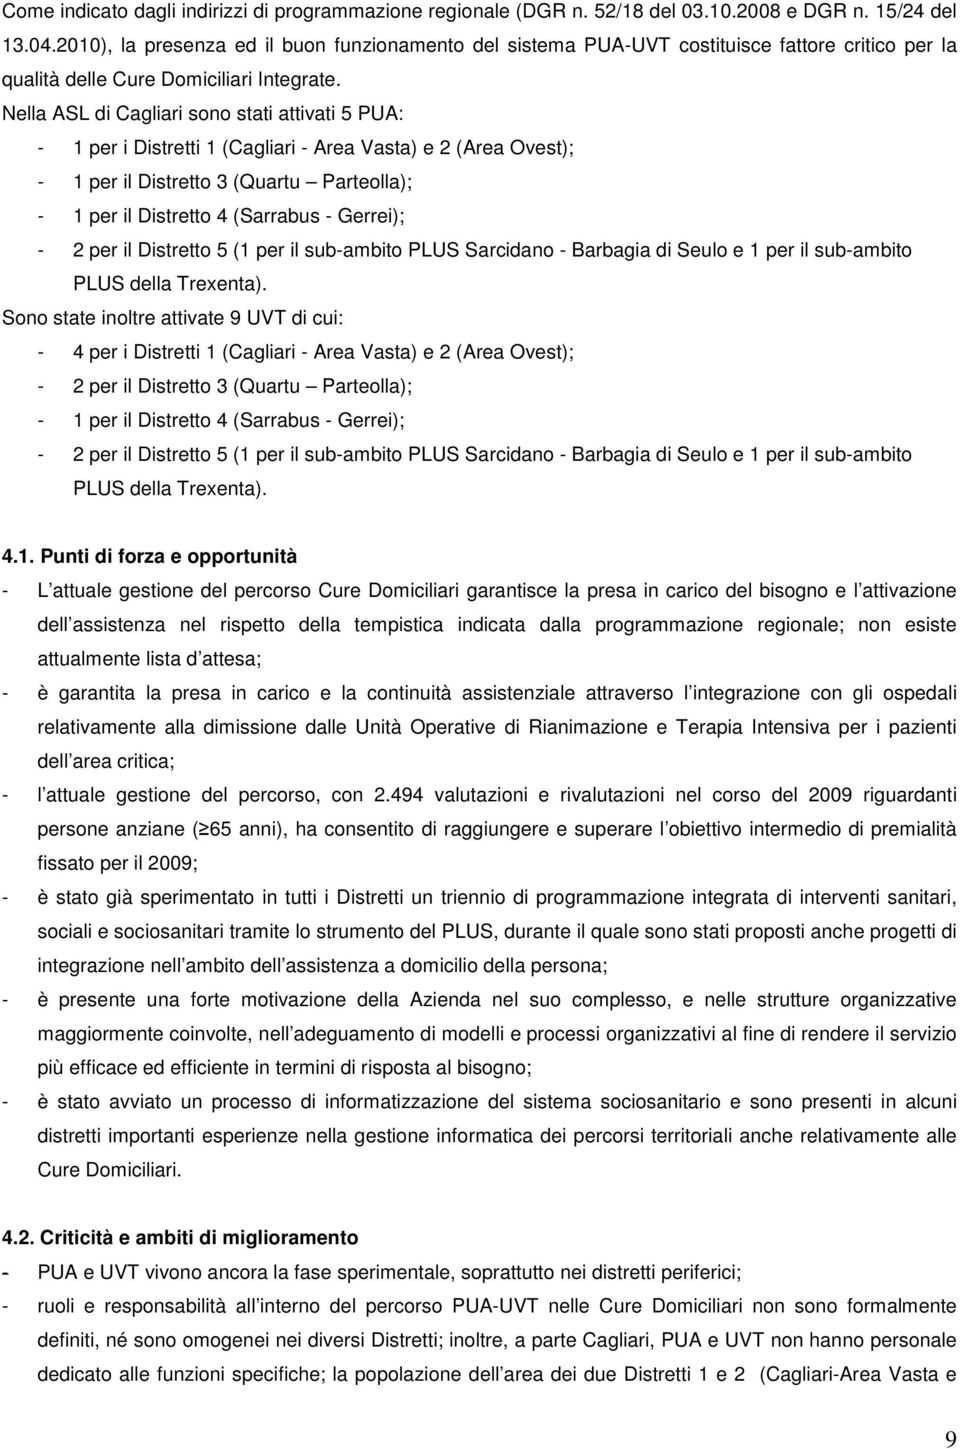 Nella ASL di Cagliari sono stati attivati 5 PUA: - 1 per i Distretti 1 (Cagliari - Area Vasta) e 2 (Area Ovest); - 1 per il Distretto 3 (Quartu Parteolla); - 1 per il Distretto 4 (Sarrabus - Gerrei);